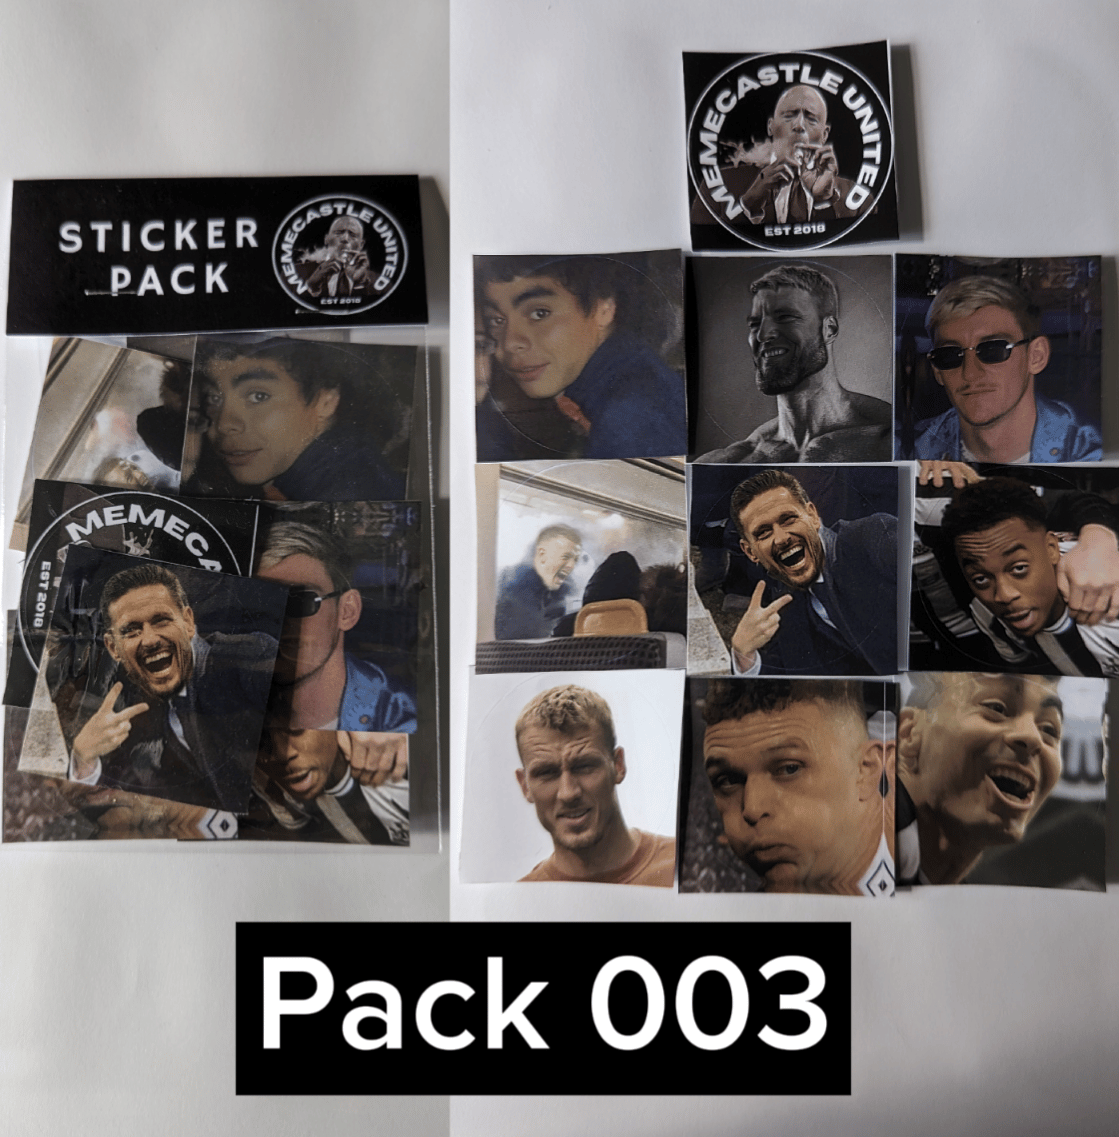 Meme Sticker Pack 